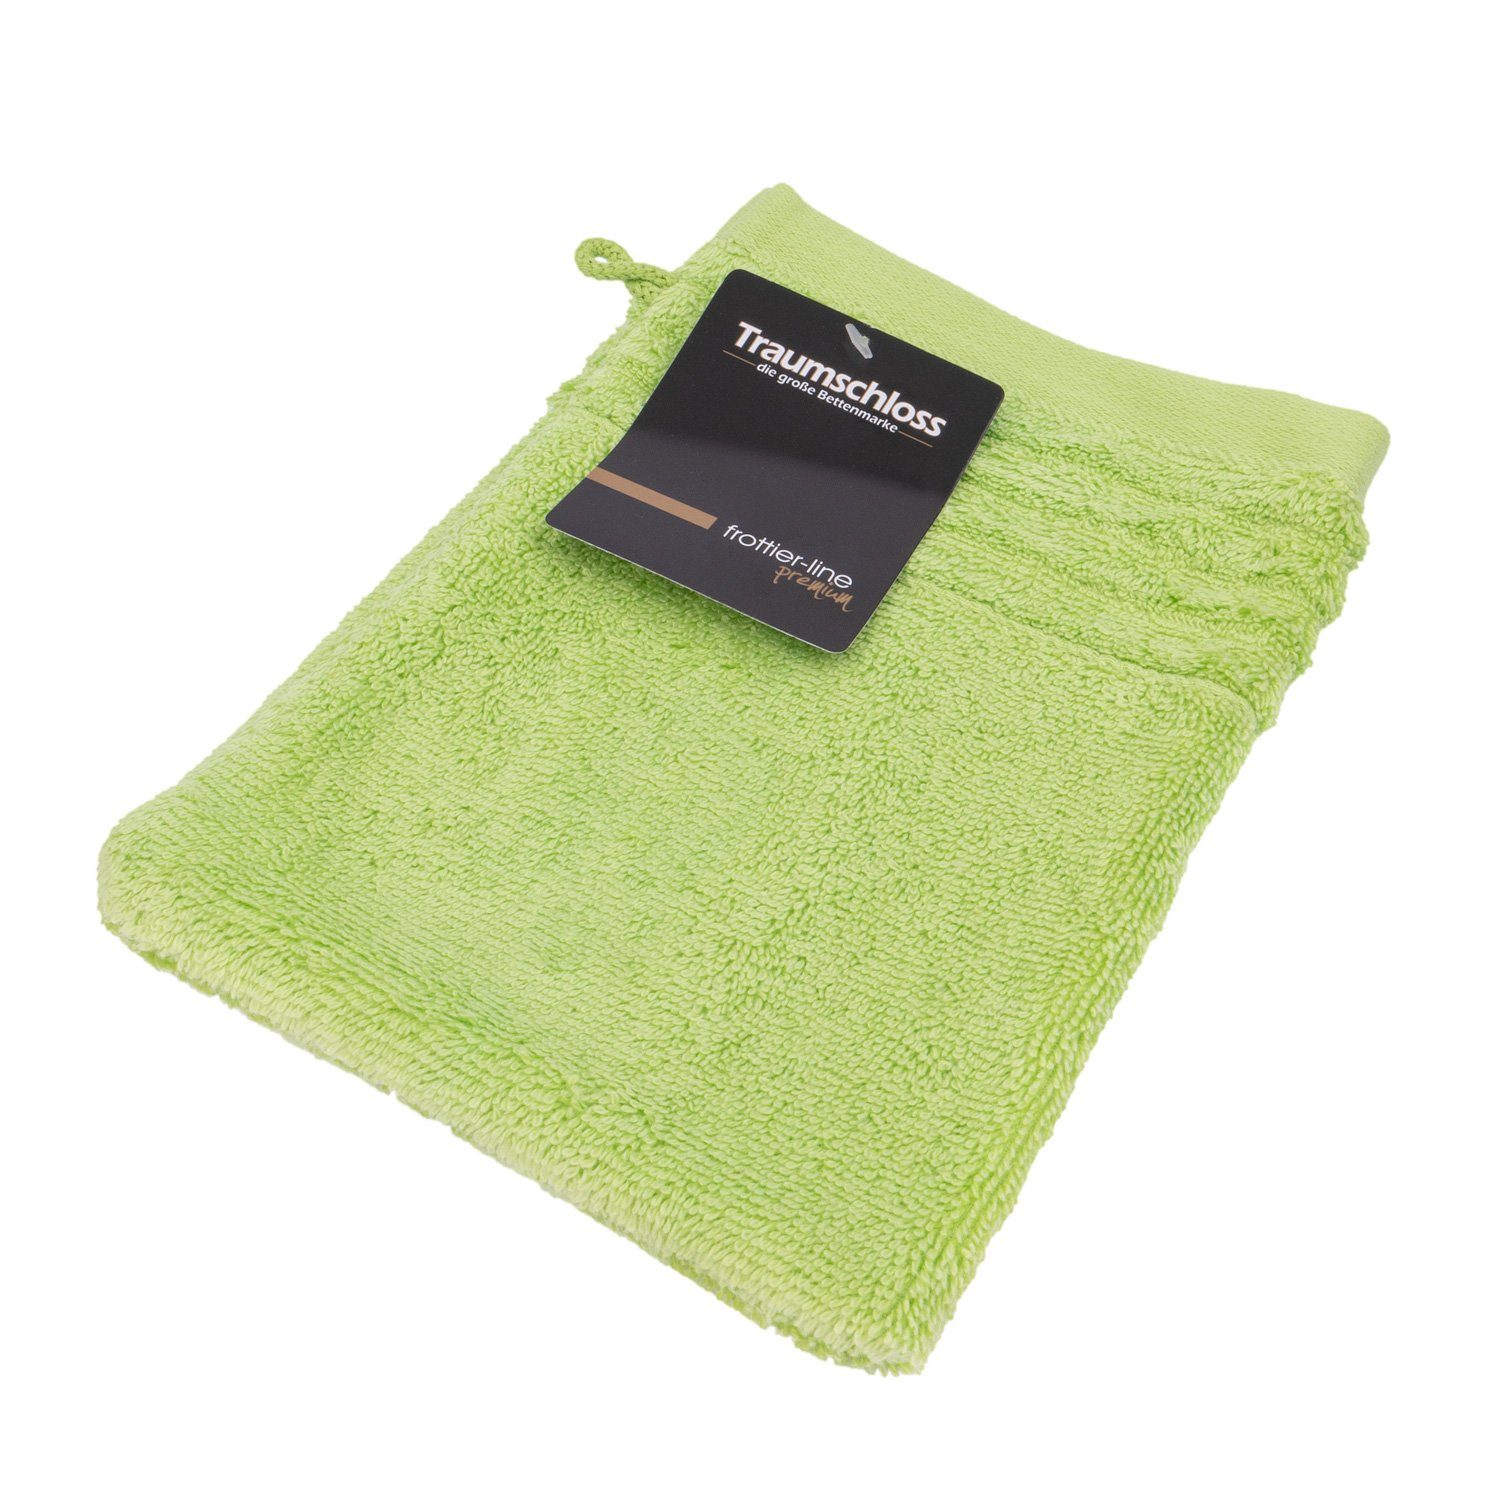 Traumschloss Waschlappen Premium-Line (1-tlg), 100% amerikanische Supima Baumwolle mit 600g/m² grün